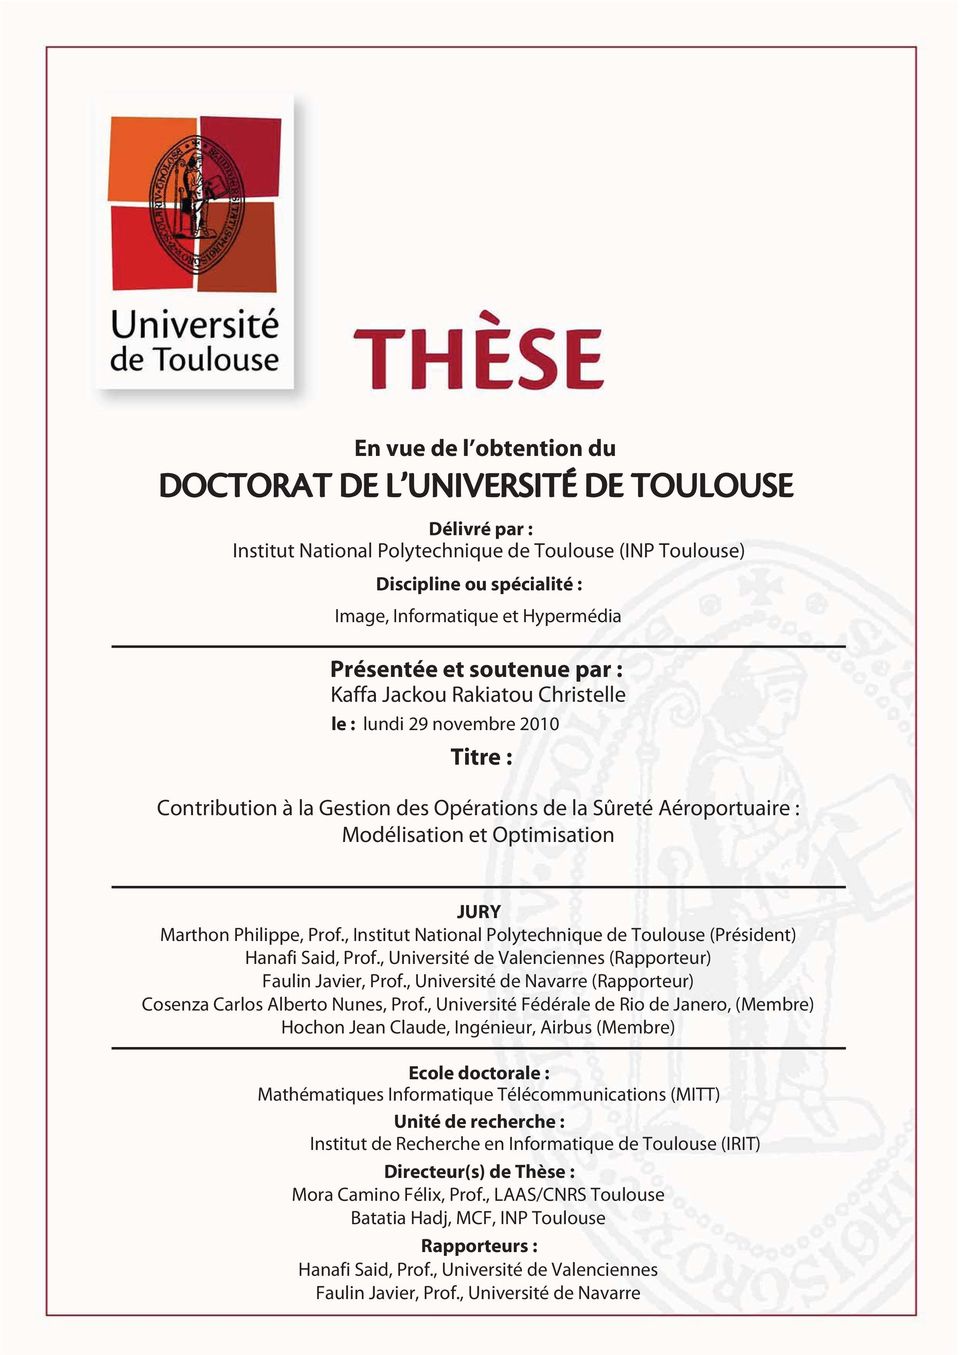 , Université de Valenciennes (Rapporteur) Faulin Javier, Prof., Université de Navarre (Rapporteur) Cosenza Carlos Alberto Nunes, Prof.